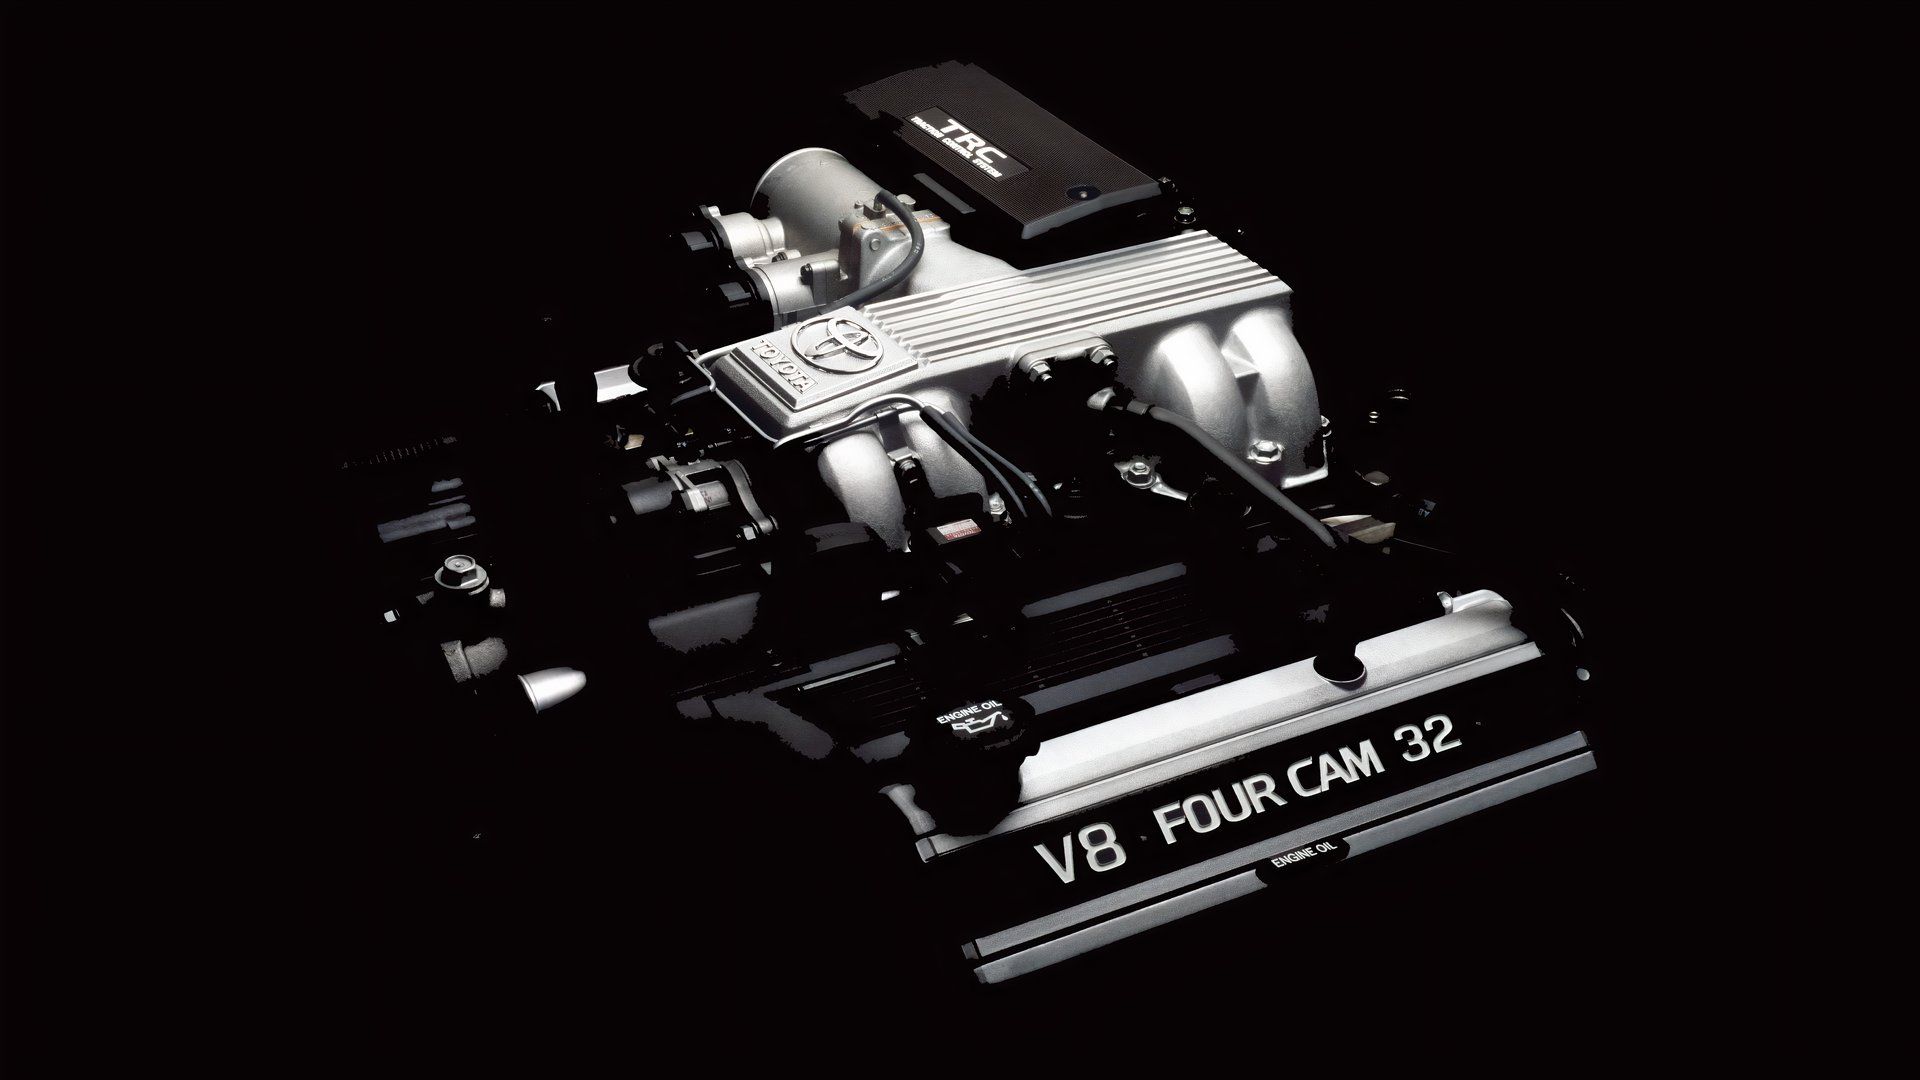 Toyota 1UZ-FE engine, view of engine in darkness